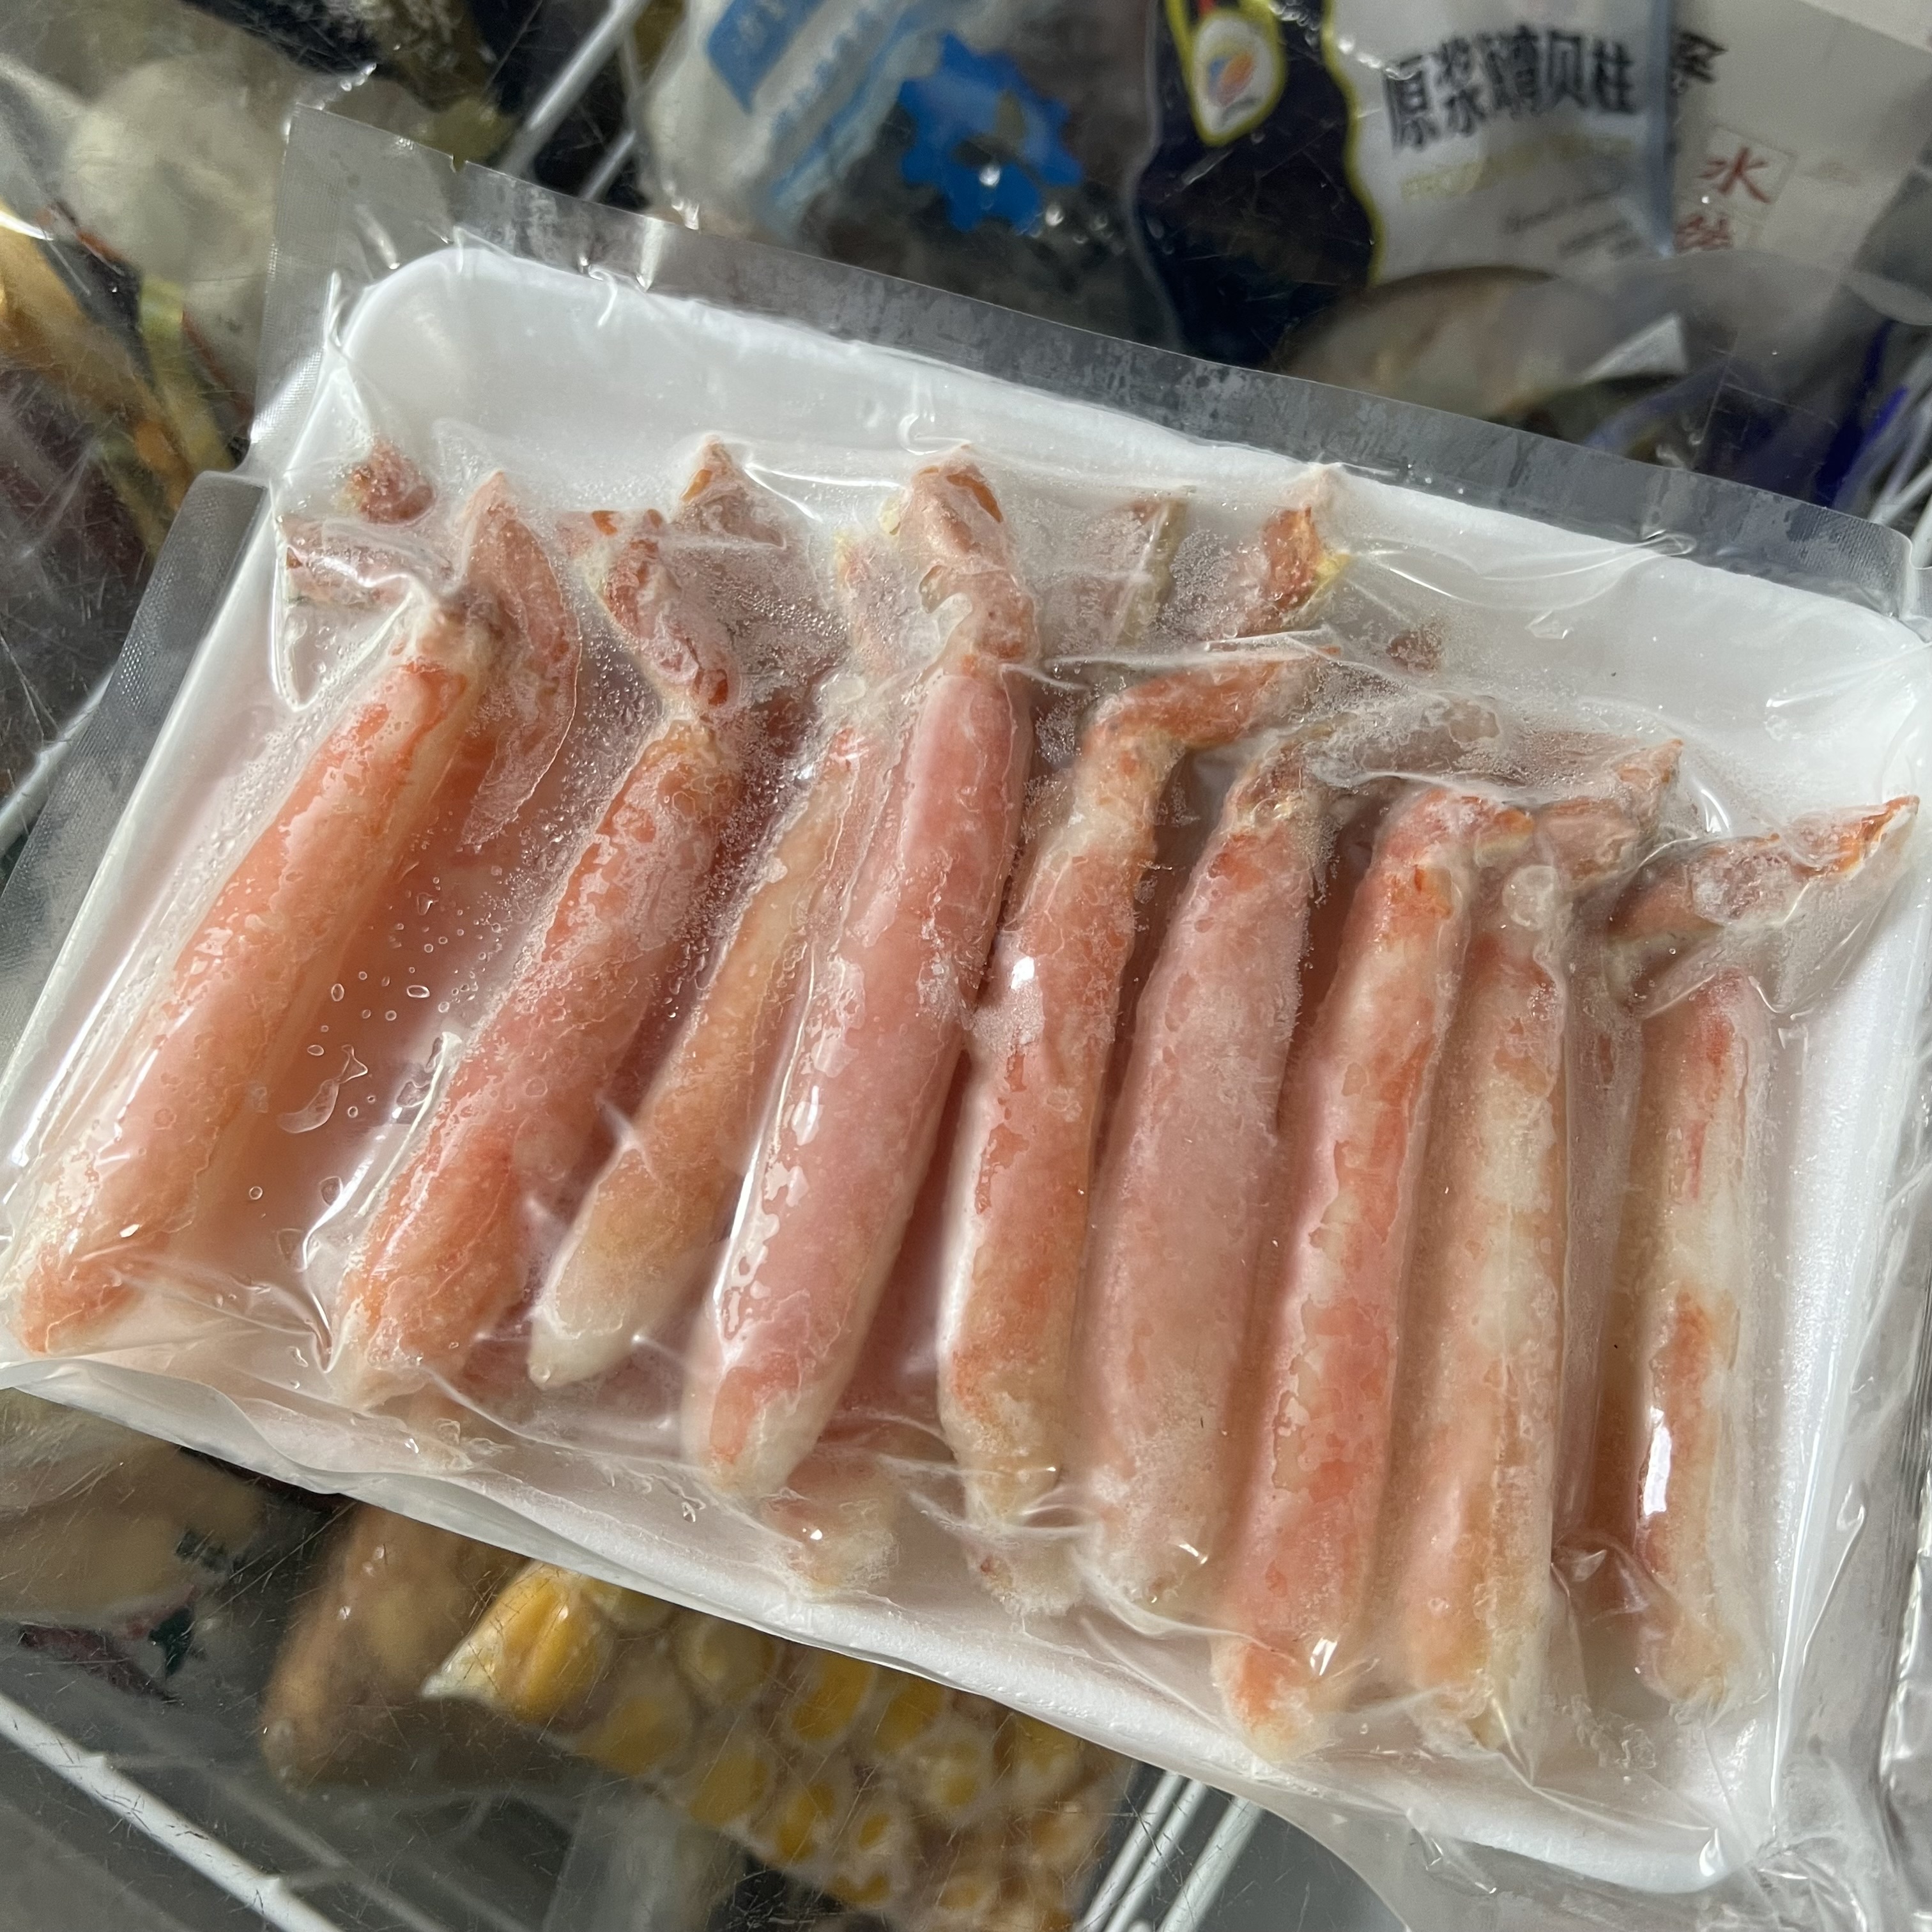 雪蟹关节棒肉 即食雪蟹拐棒 蟹腿肉 熟冻日式 料理 蟹肉 500克/袋